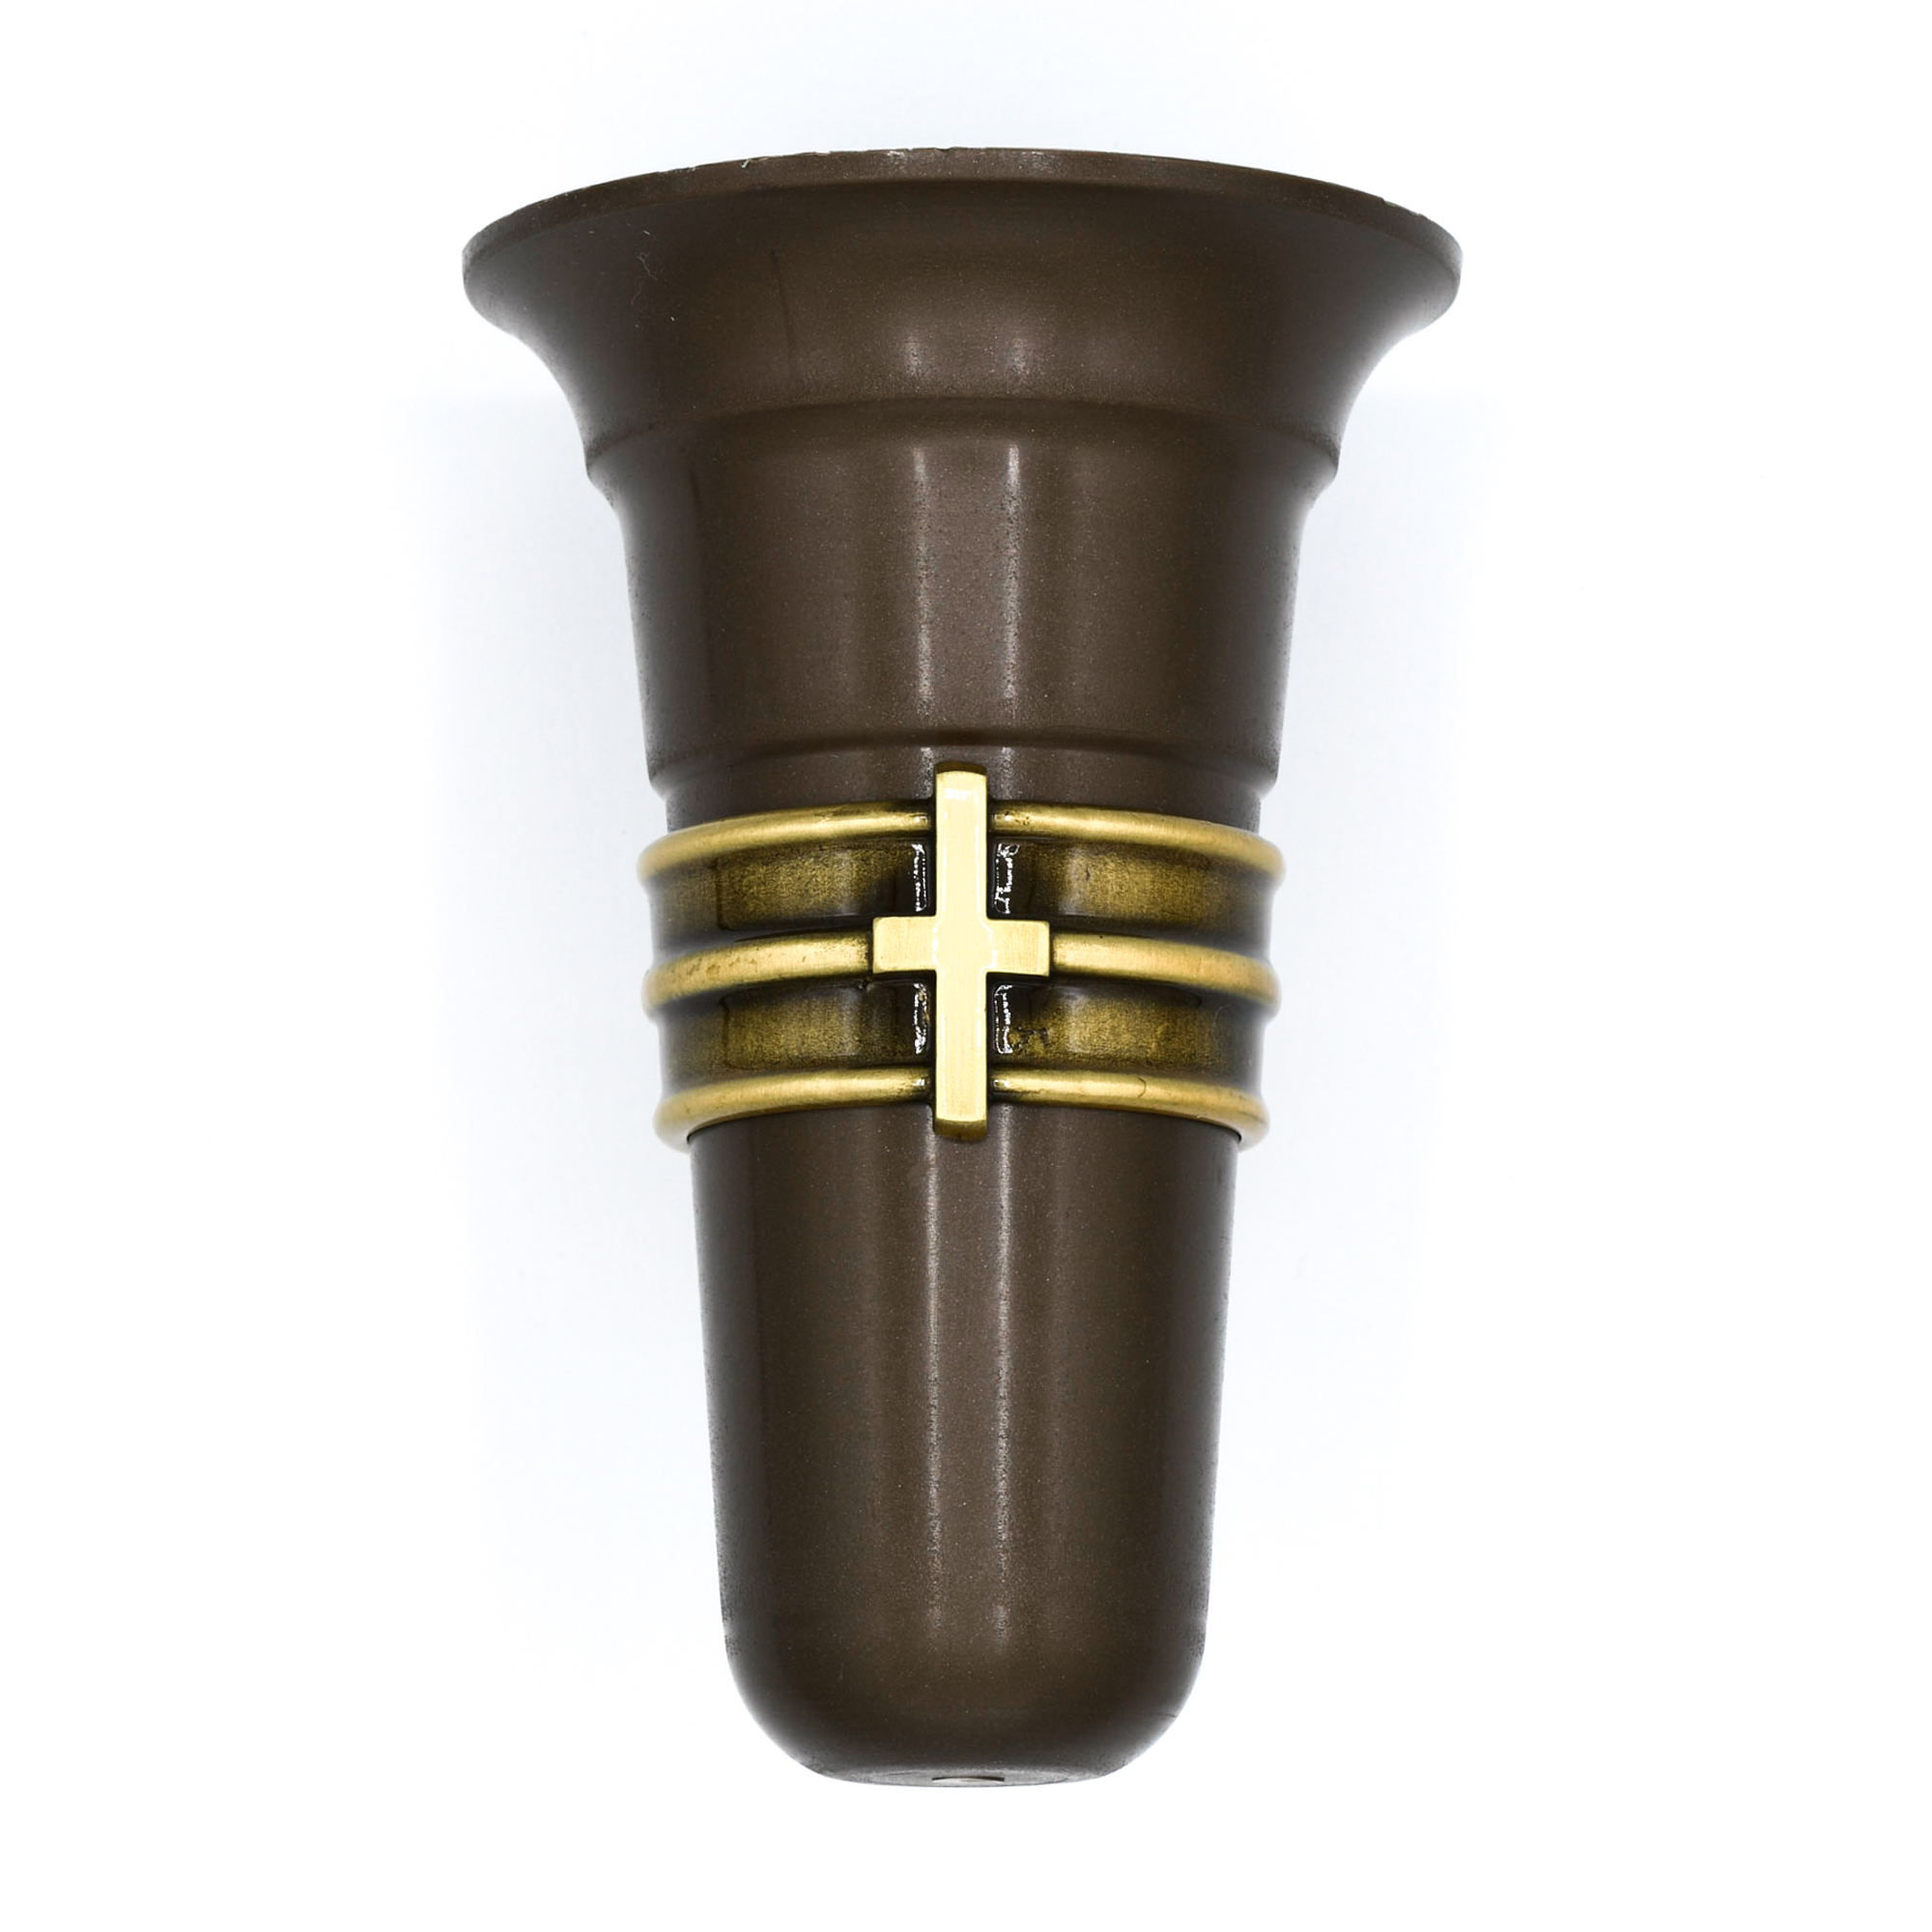 Cross ring Vase 2.75″ – 4.25″